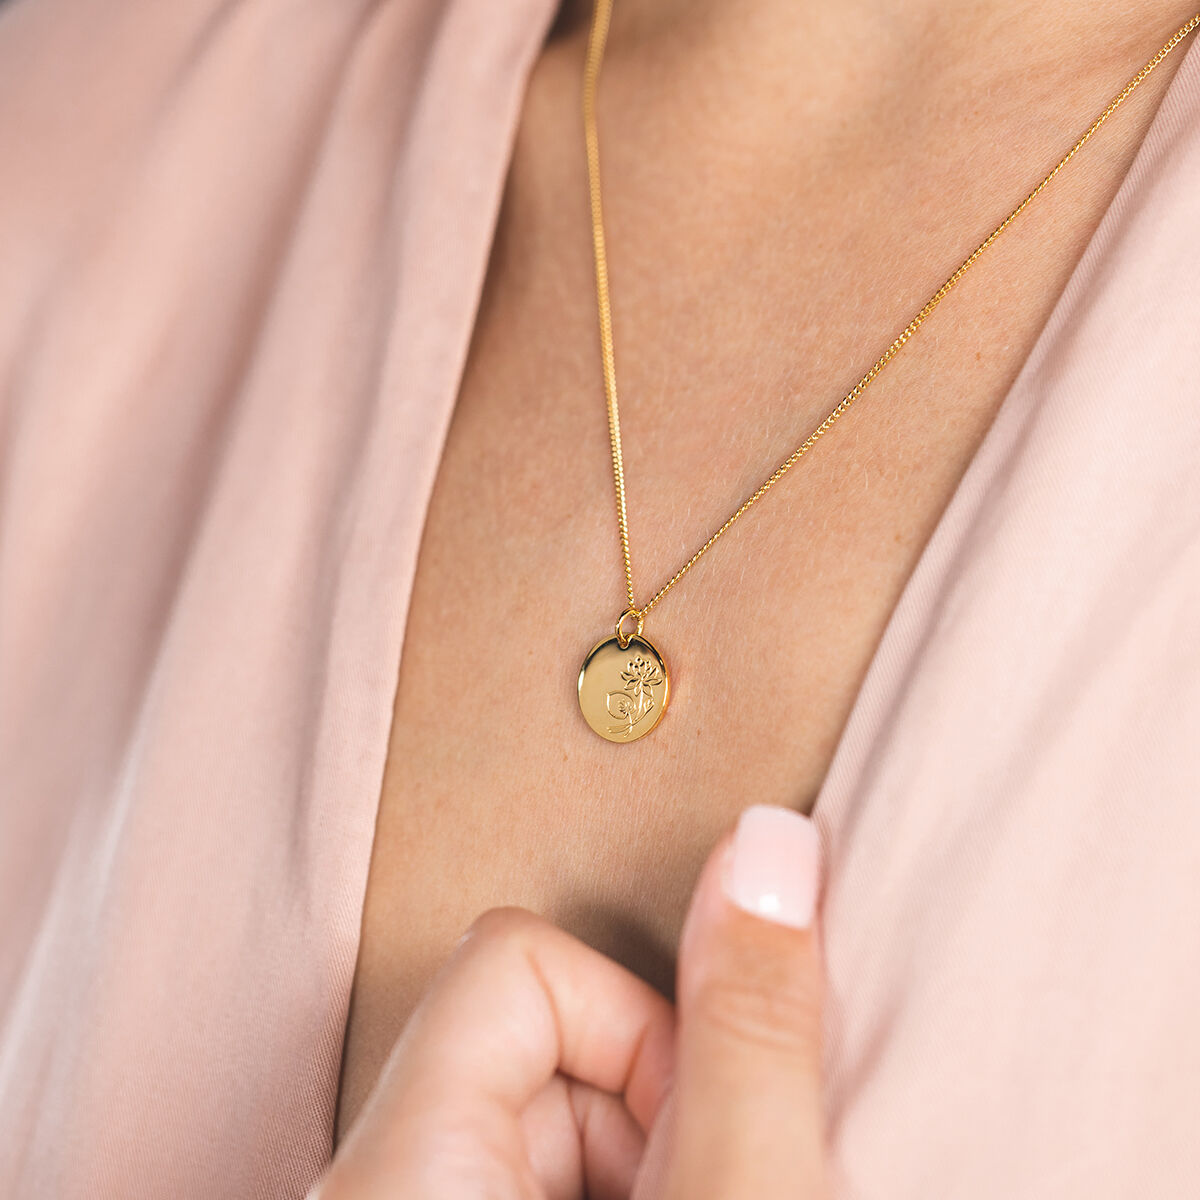 birthflower necklace gold wasserlilie